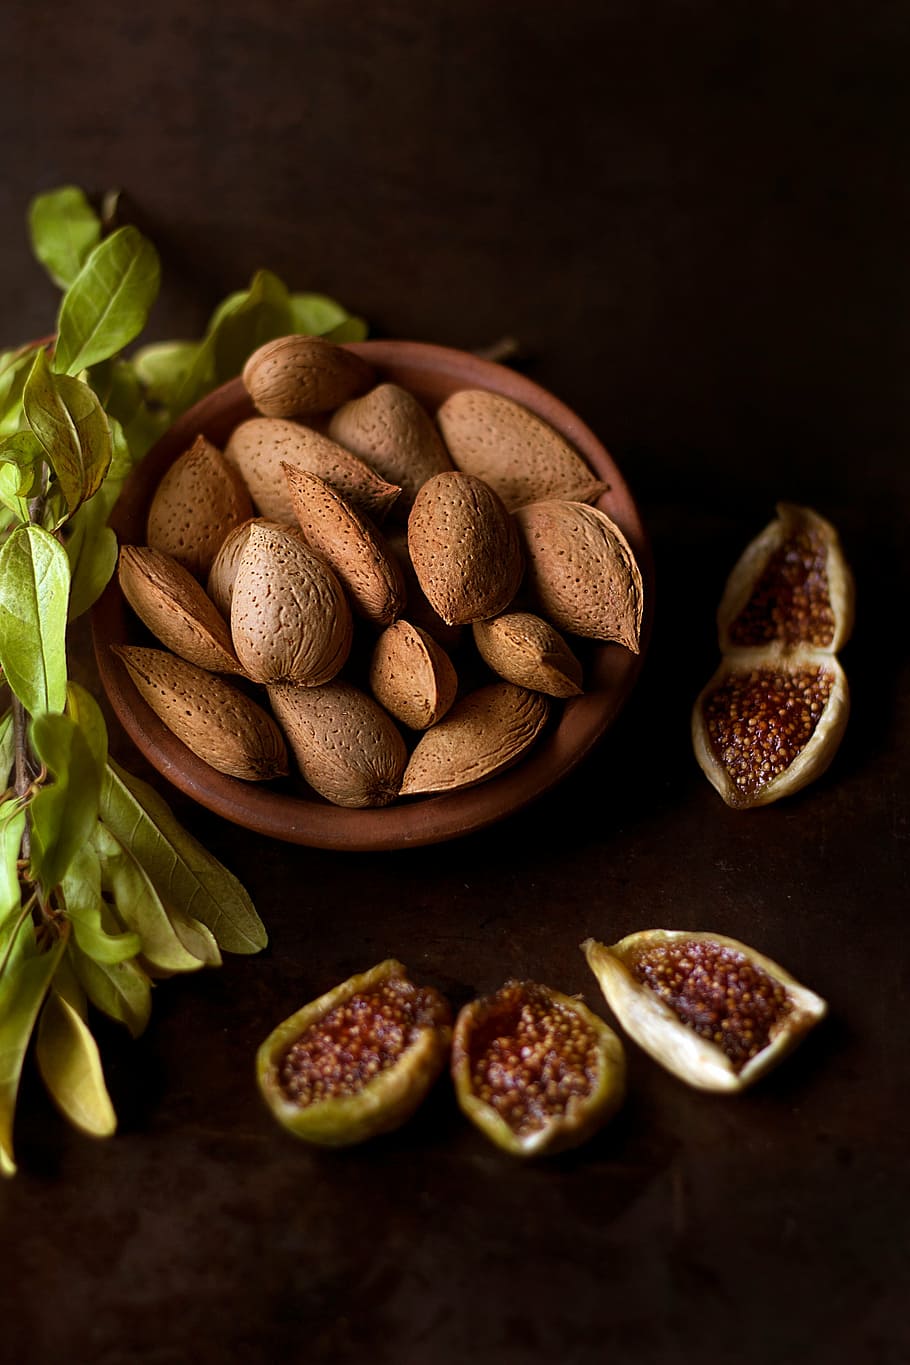 kacang almond coklat, coklat, hazel, kacang-kacangan, bunga, pot, hijau, daun, tanaman, buah